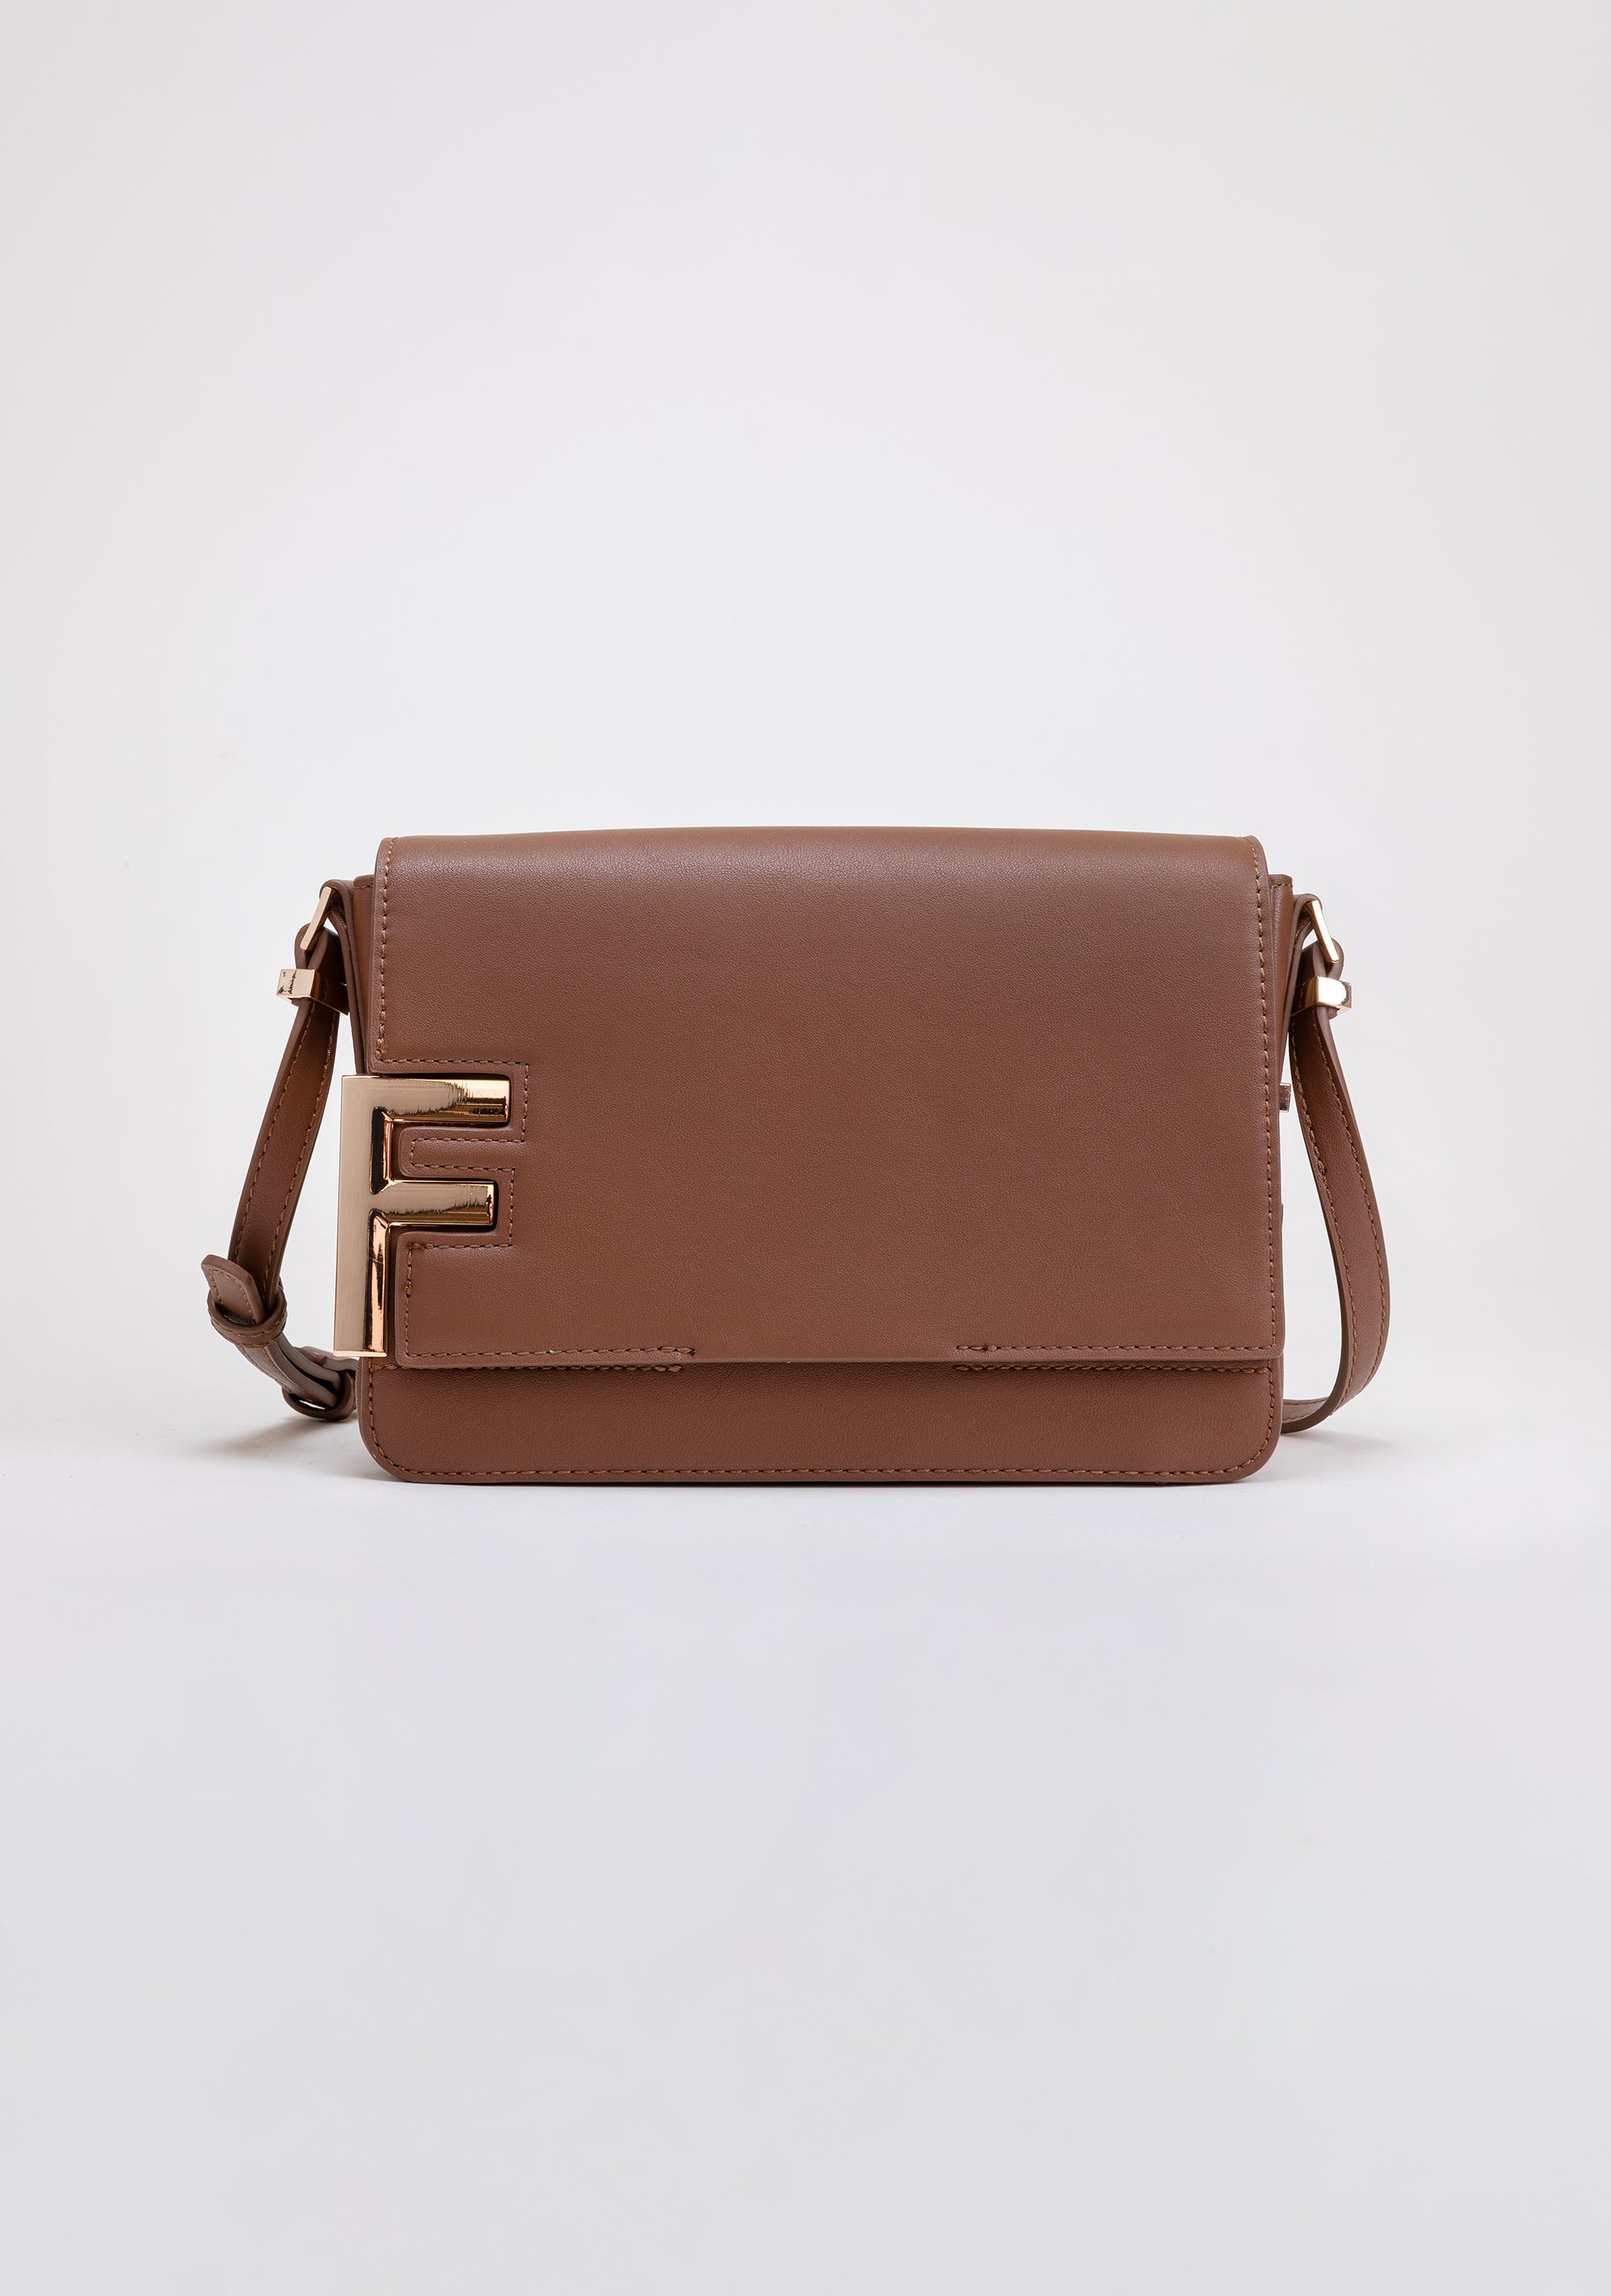 Nella Bella 'Robyn' Handbag from Compassionate Closet